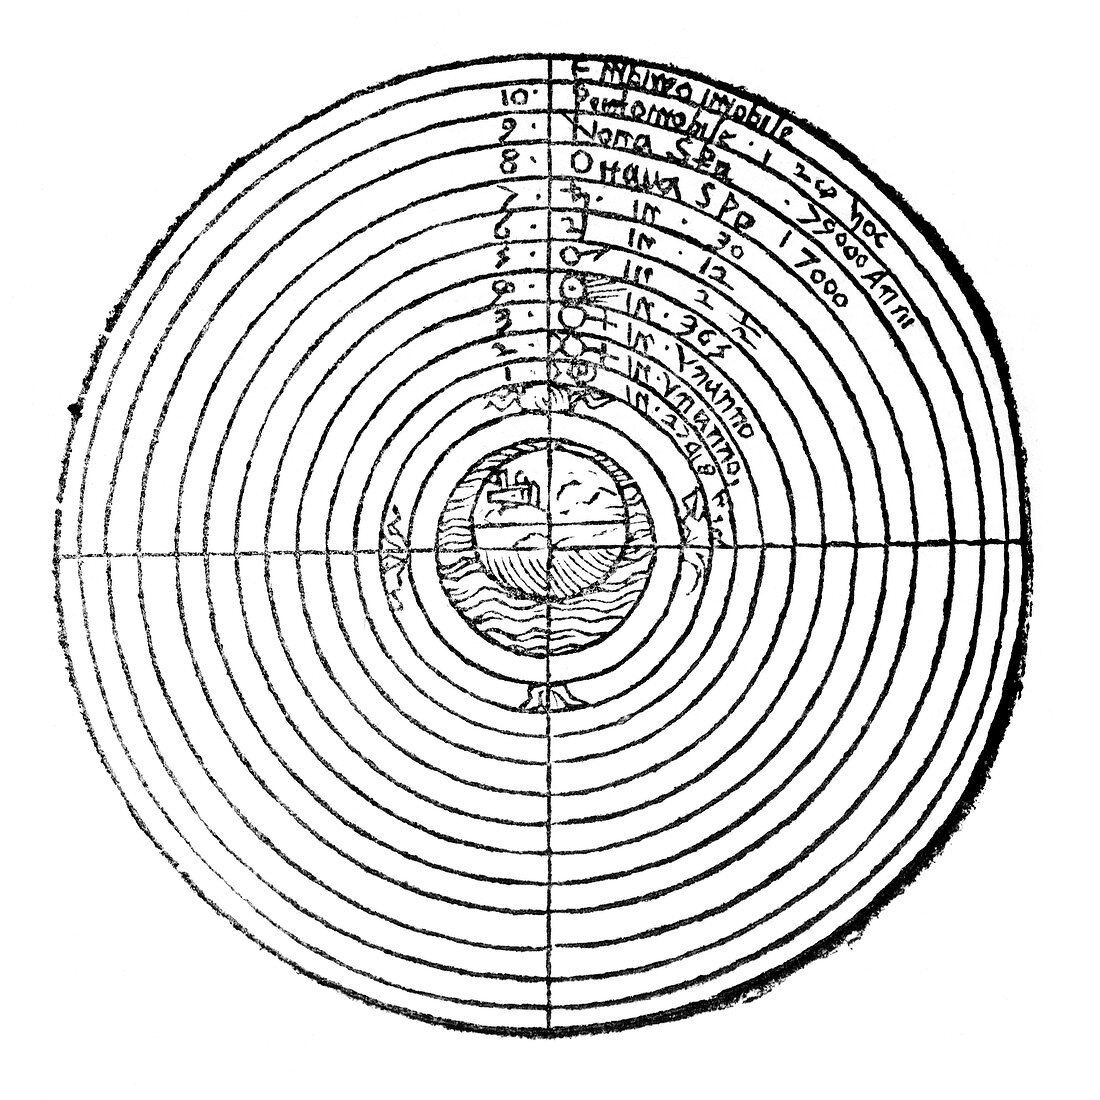 Aristotelian cosmology,1560